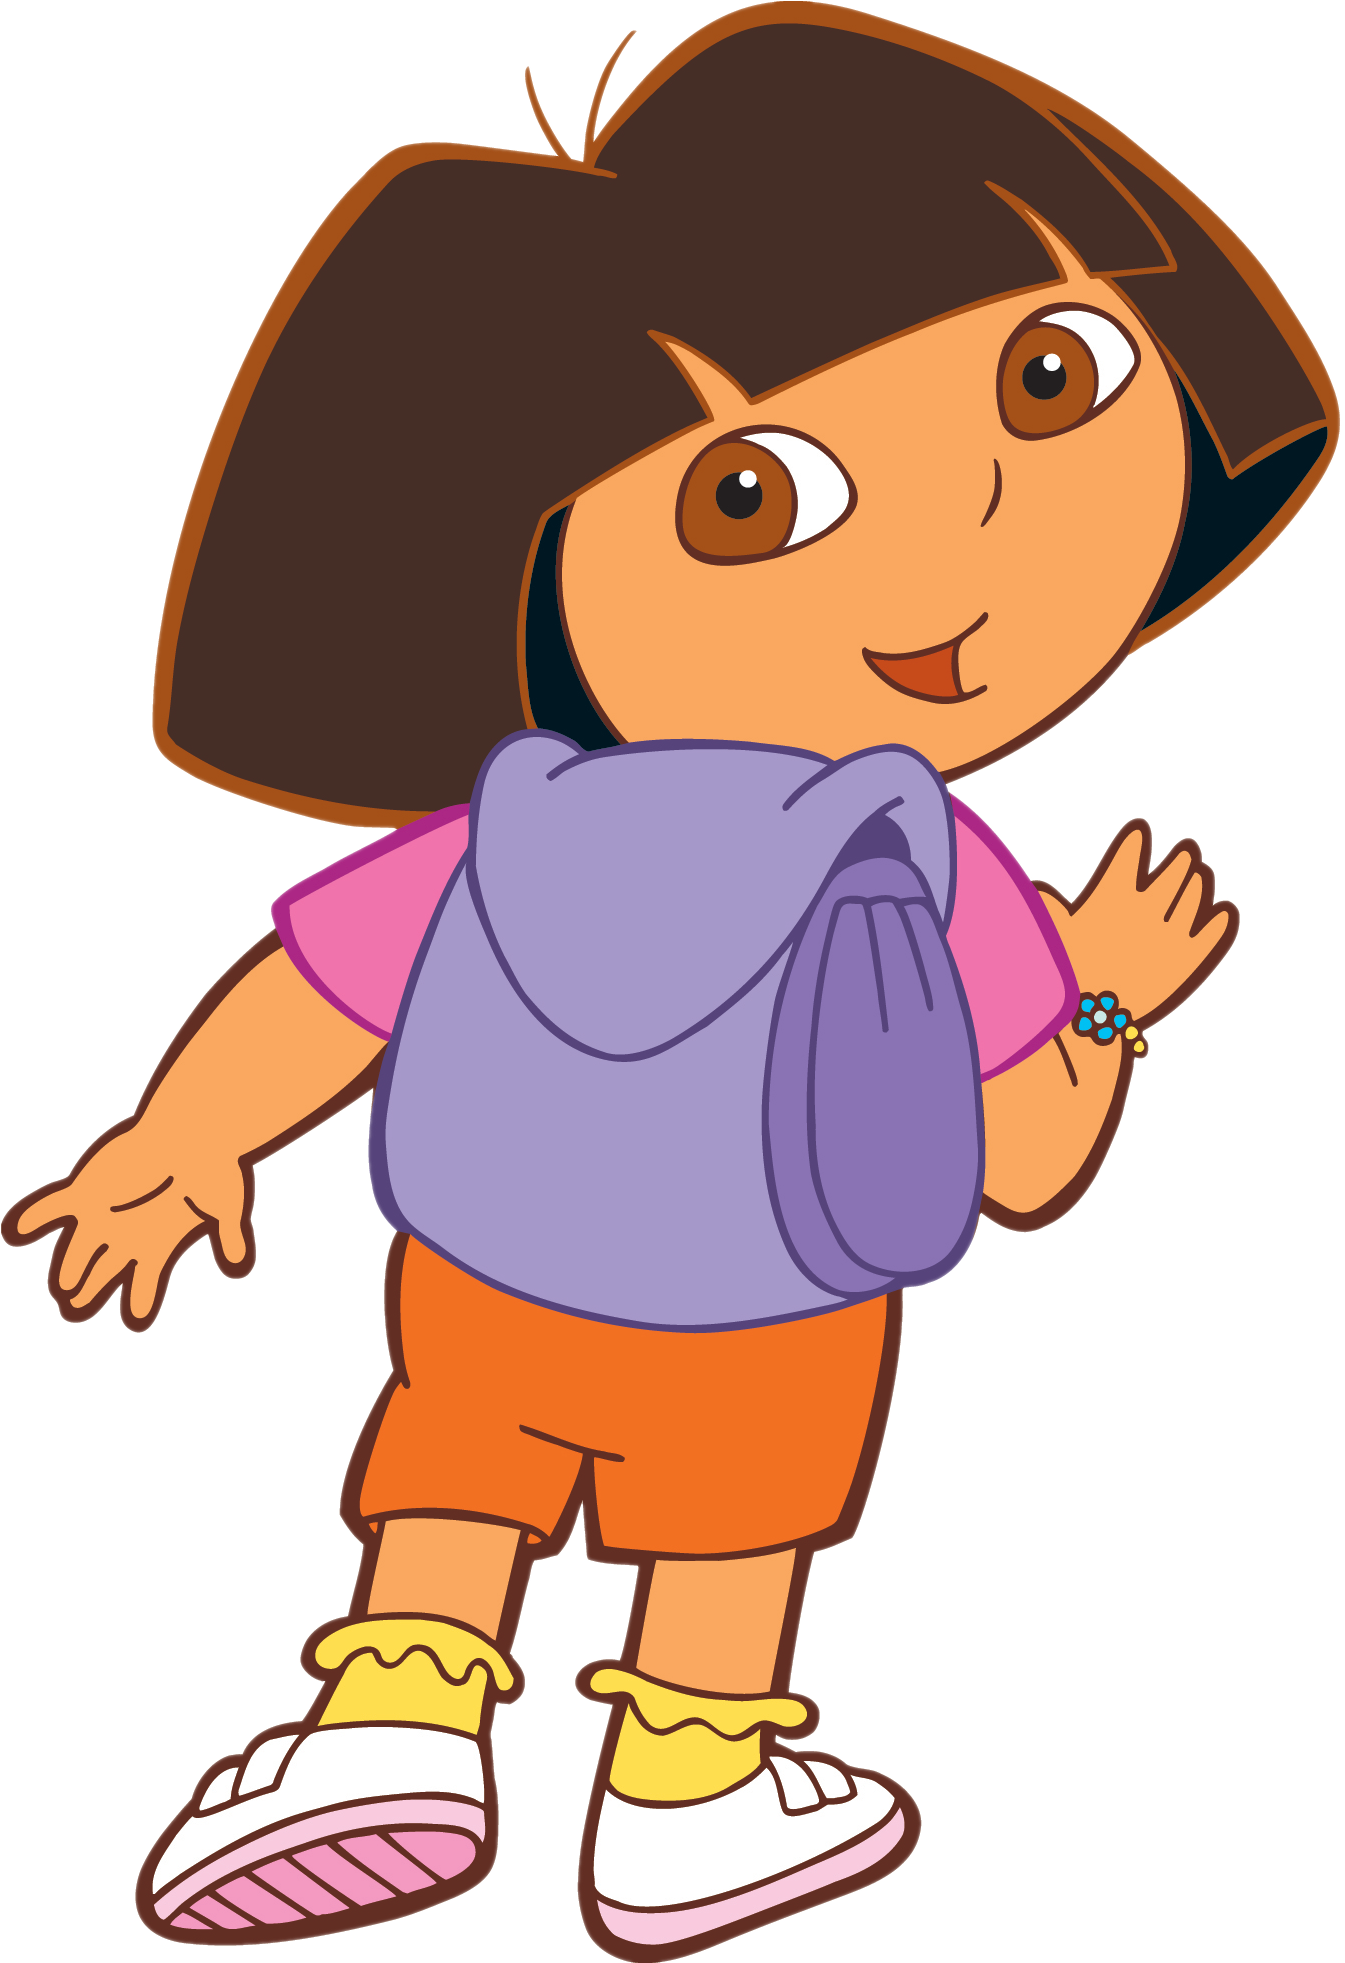 Dora The Explorer PNG Image Transparent Background